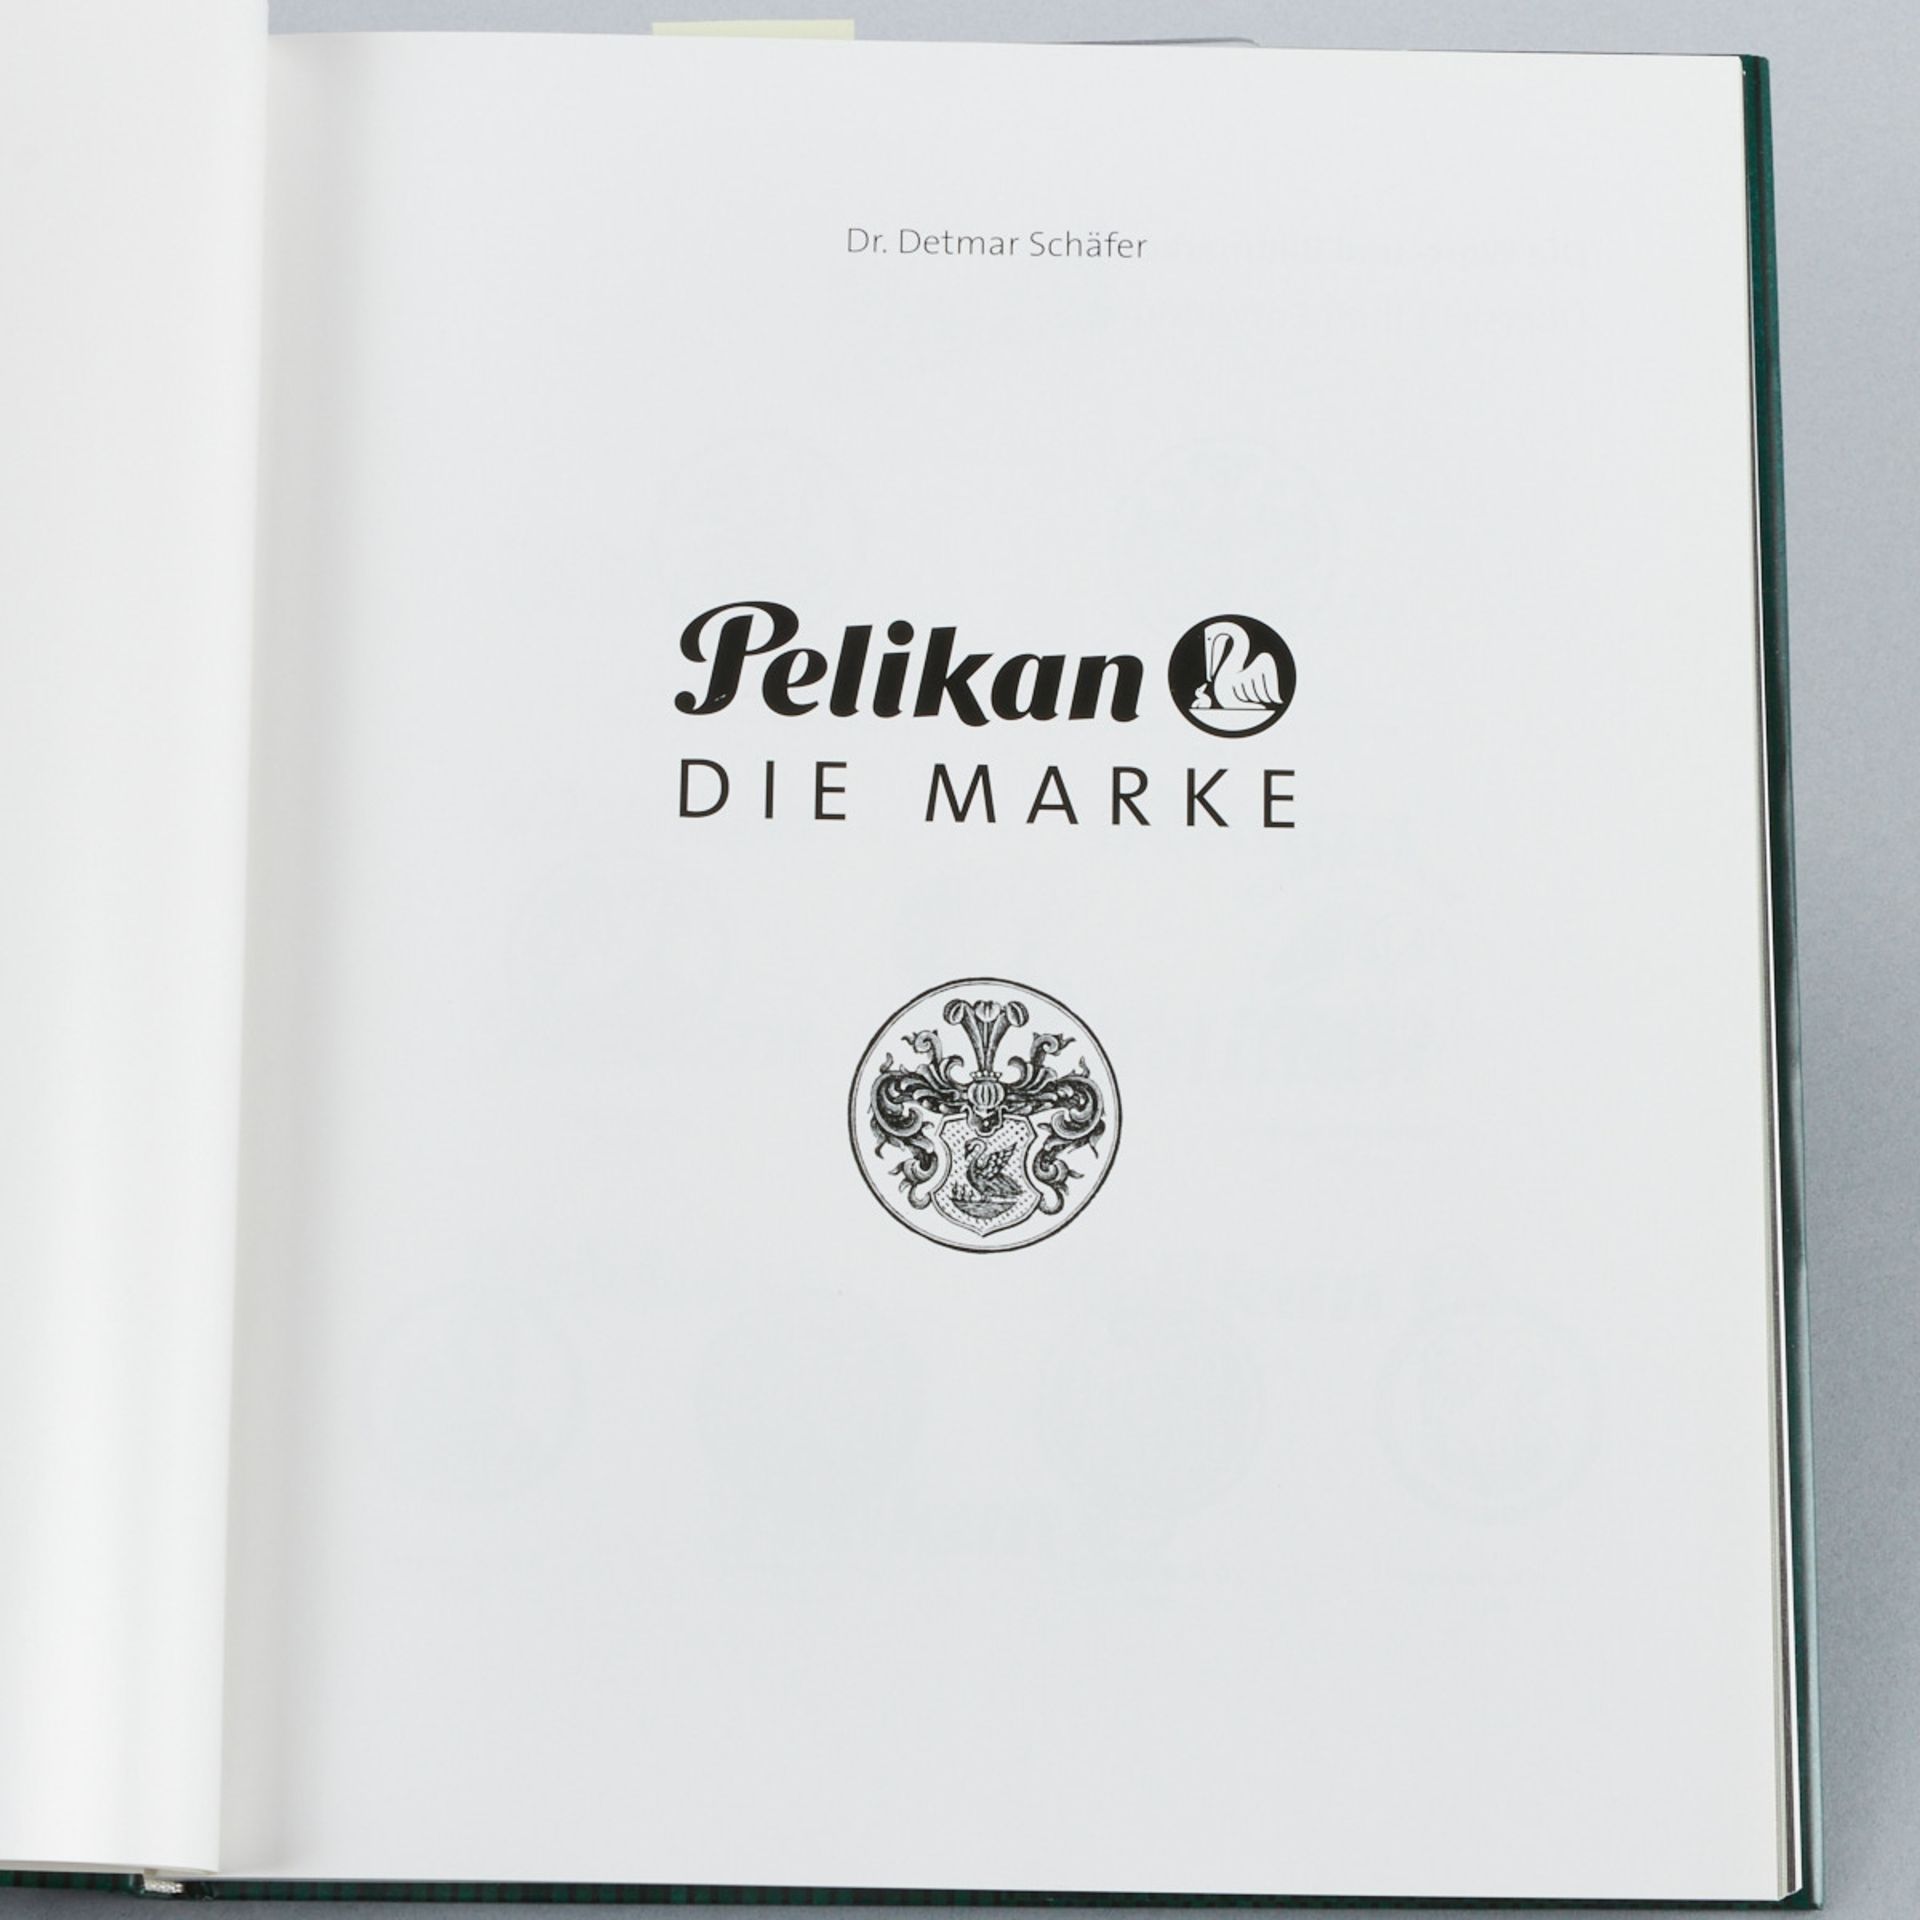 Pelikan, die Marke - Image 2 of 3